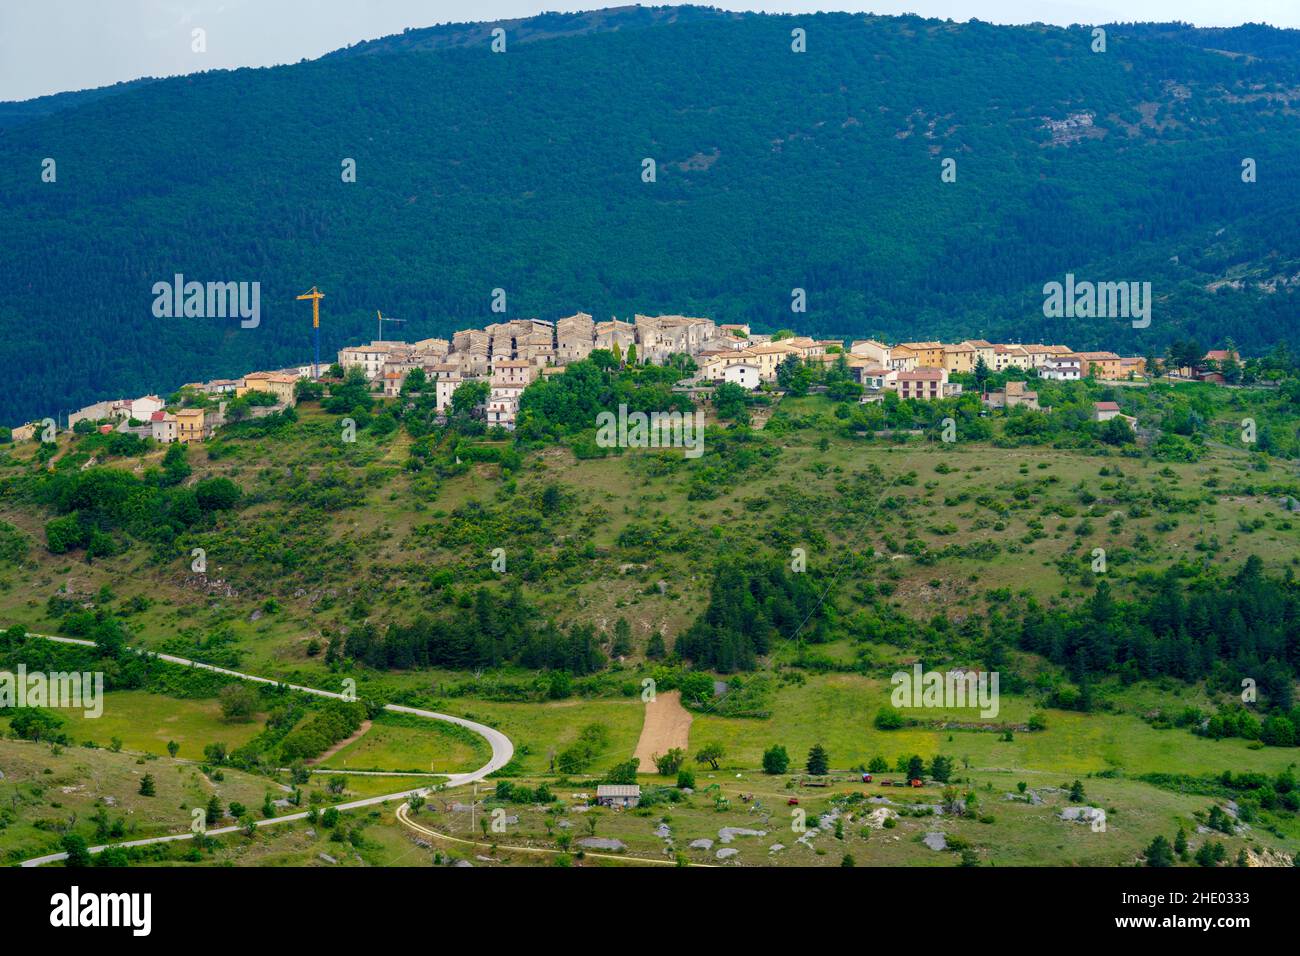 Mountain landscape at Gran Sasso Natural Park, in Abruzzo, Italy, L Aquila province, at springtime (June). View of Castelvecchio Calvisio, historic vi Stock Photo